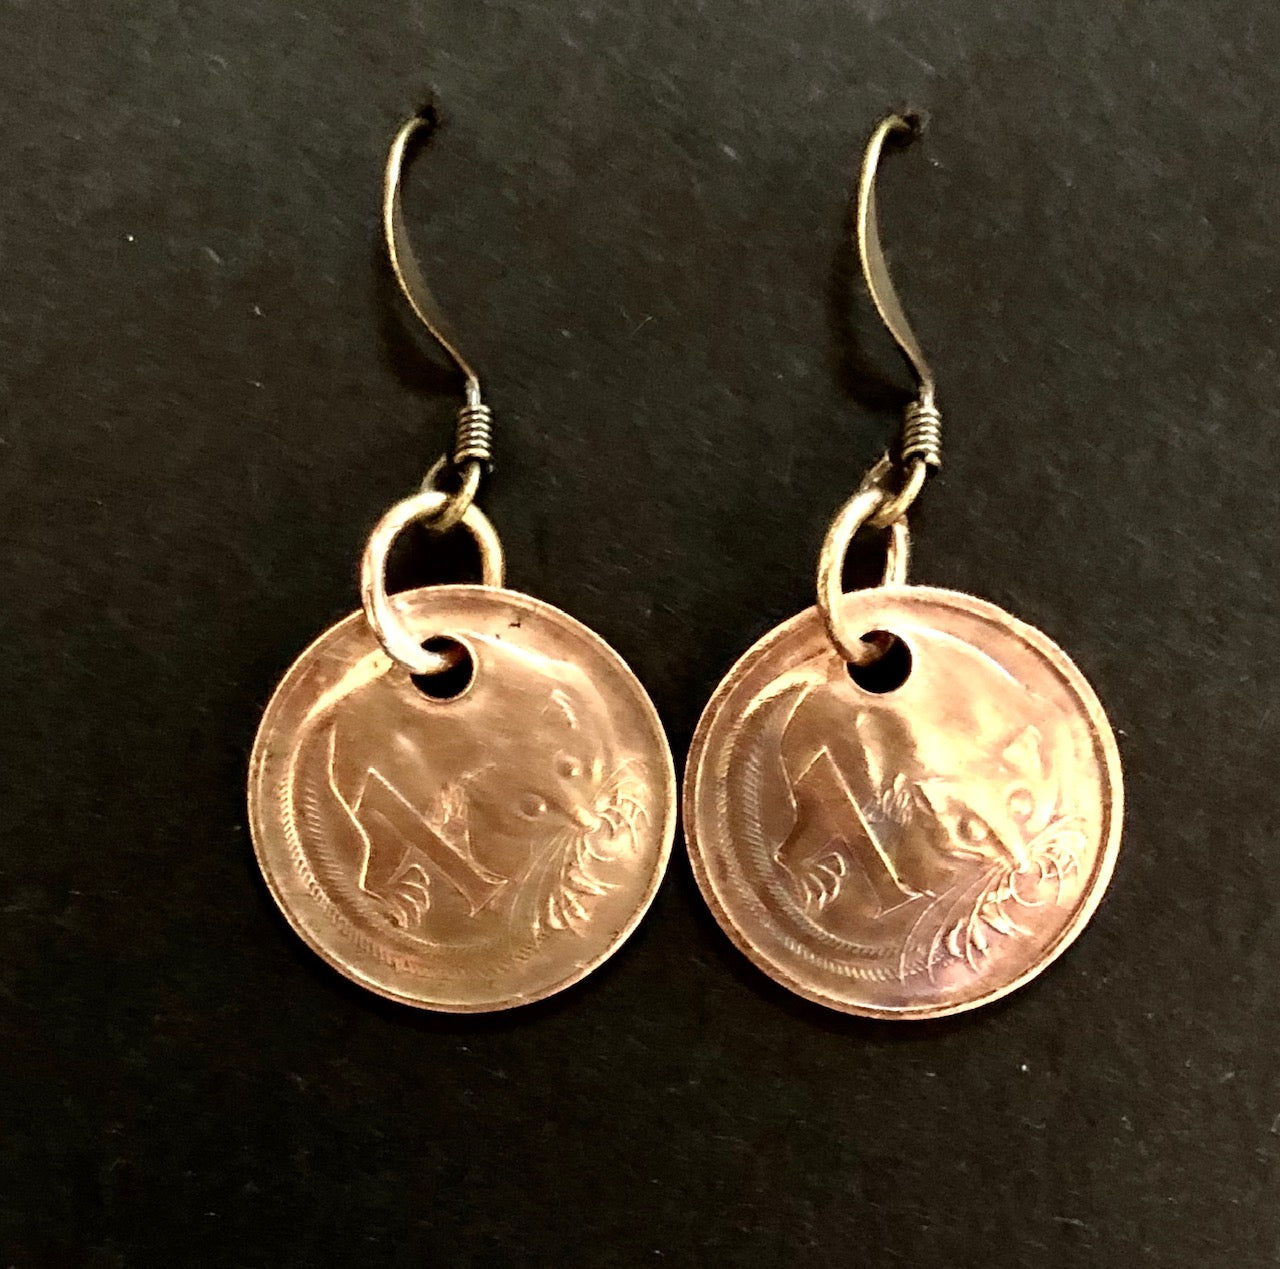 1c copper earrings